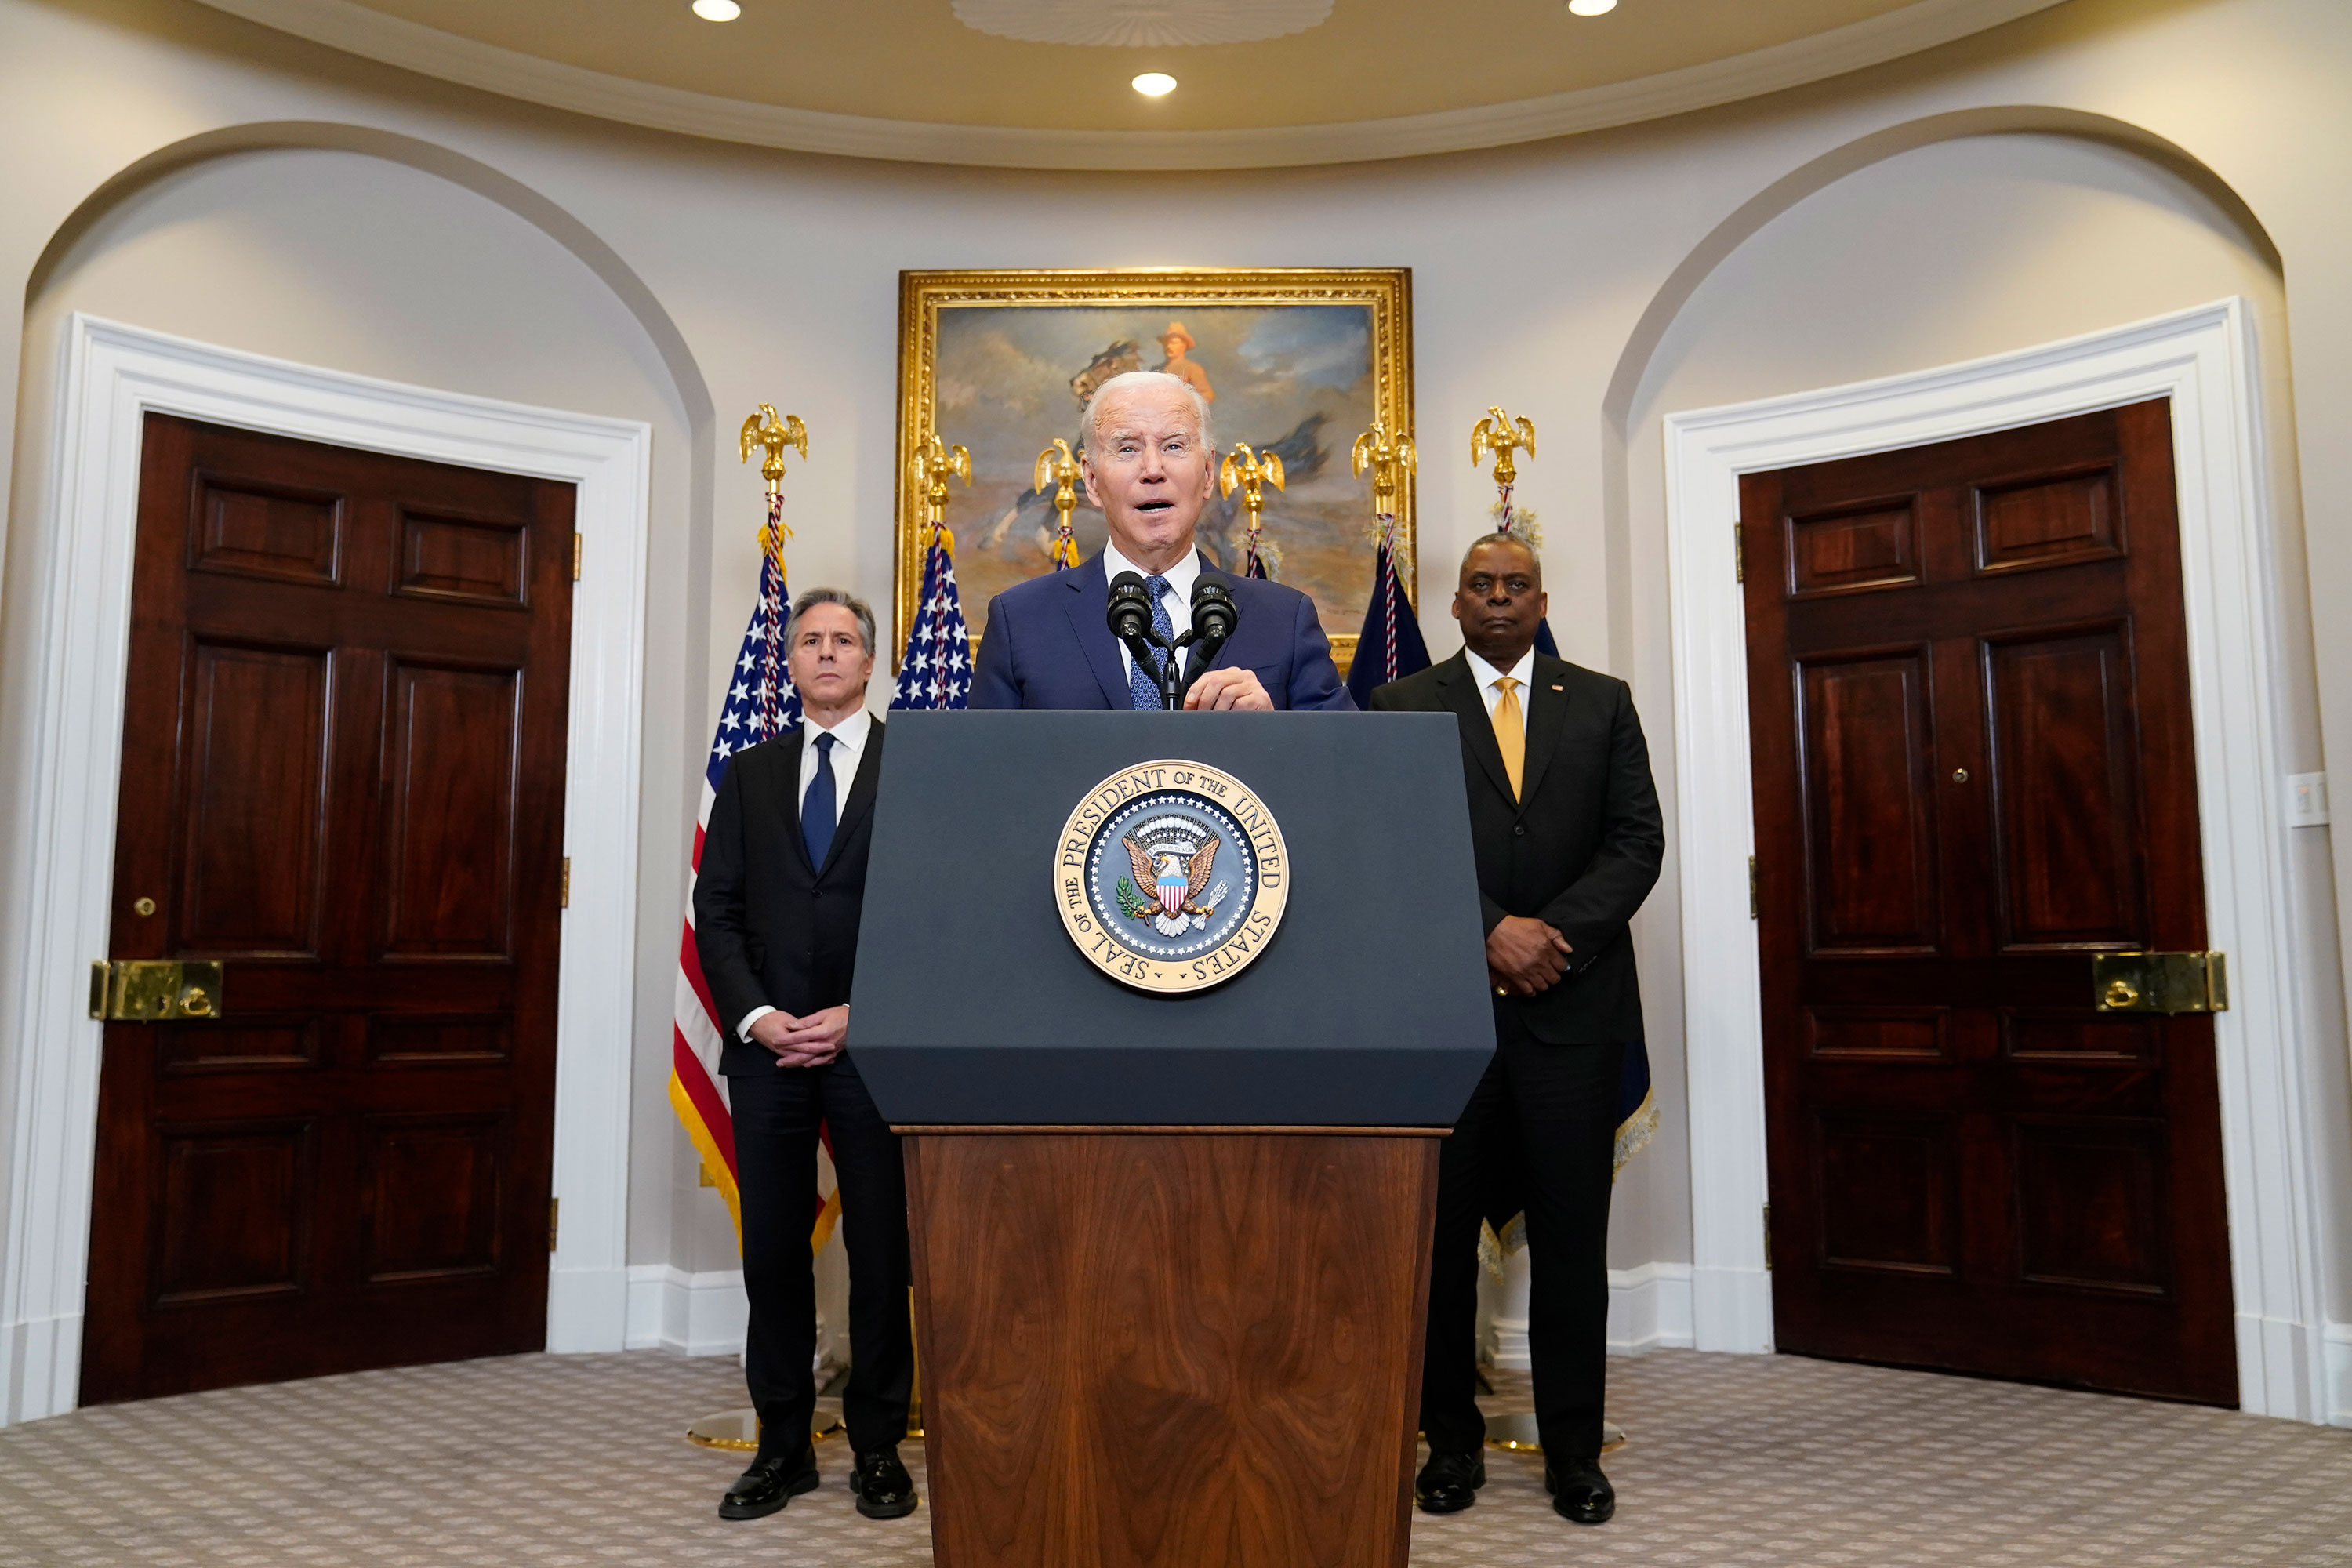 President Joe Biden speaks from the White House with Secretary of State Antony Blinken, left, and Defense Secretary Lloyd Austin behind him on Wednesday.